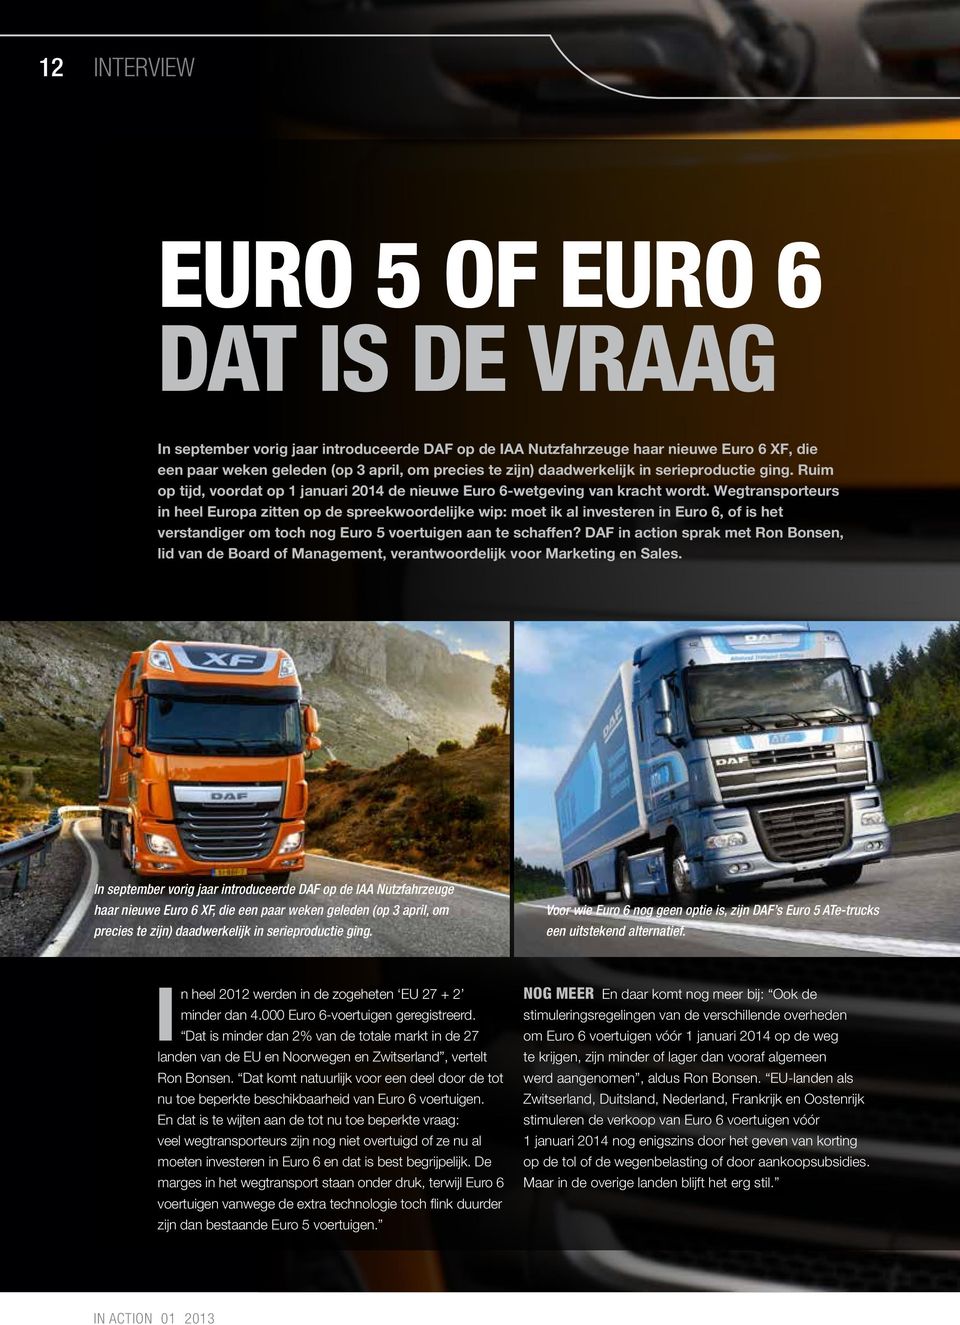 Wegtransporteurs in heel Europa zitten op de spreekwoordelijke wip: moet ik al investeren in Euro 6, of is het verstandiger om toch nog Euro 5 voertuigen aan te schaffen?